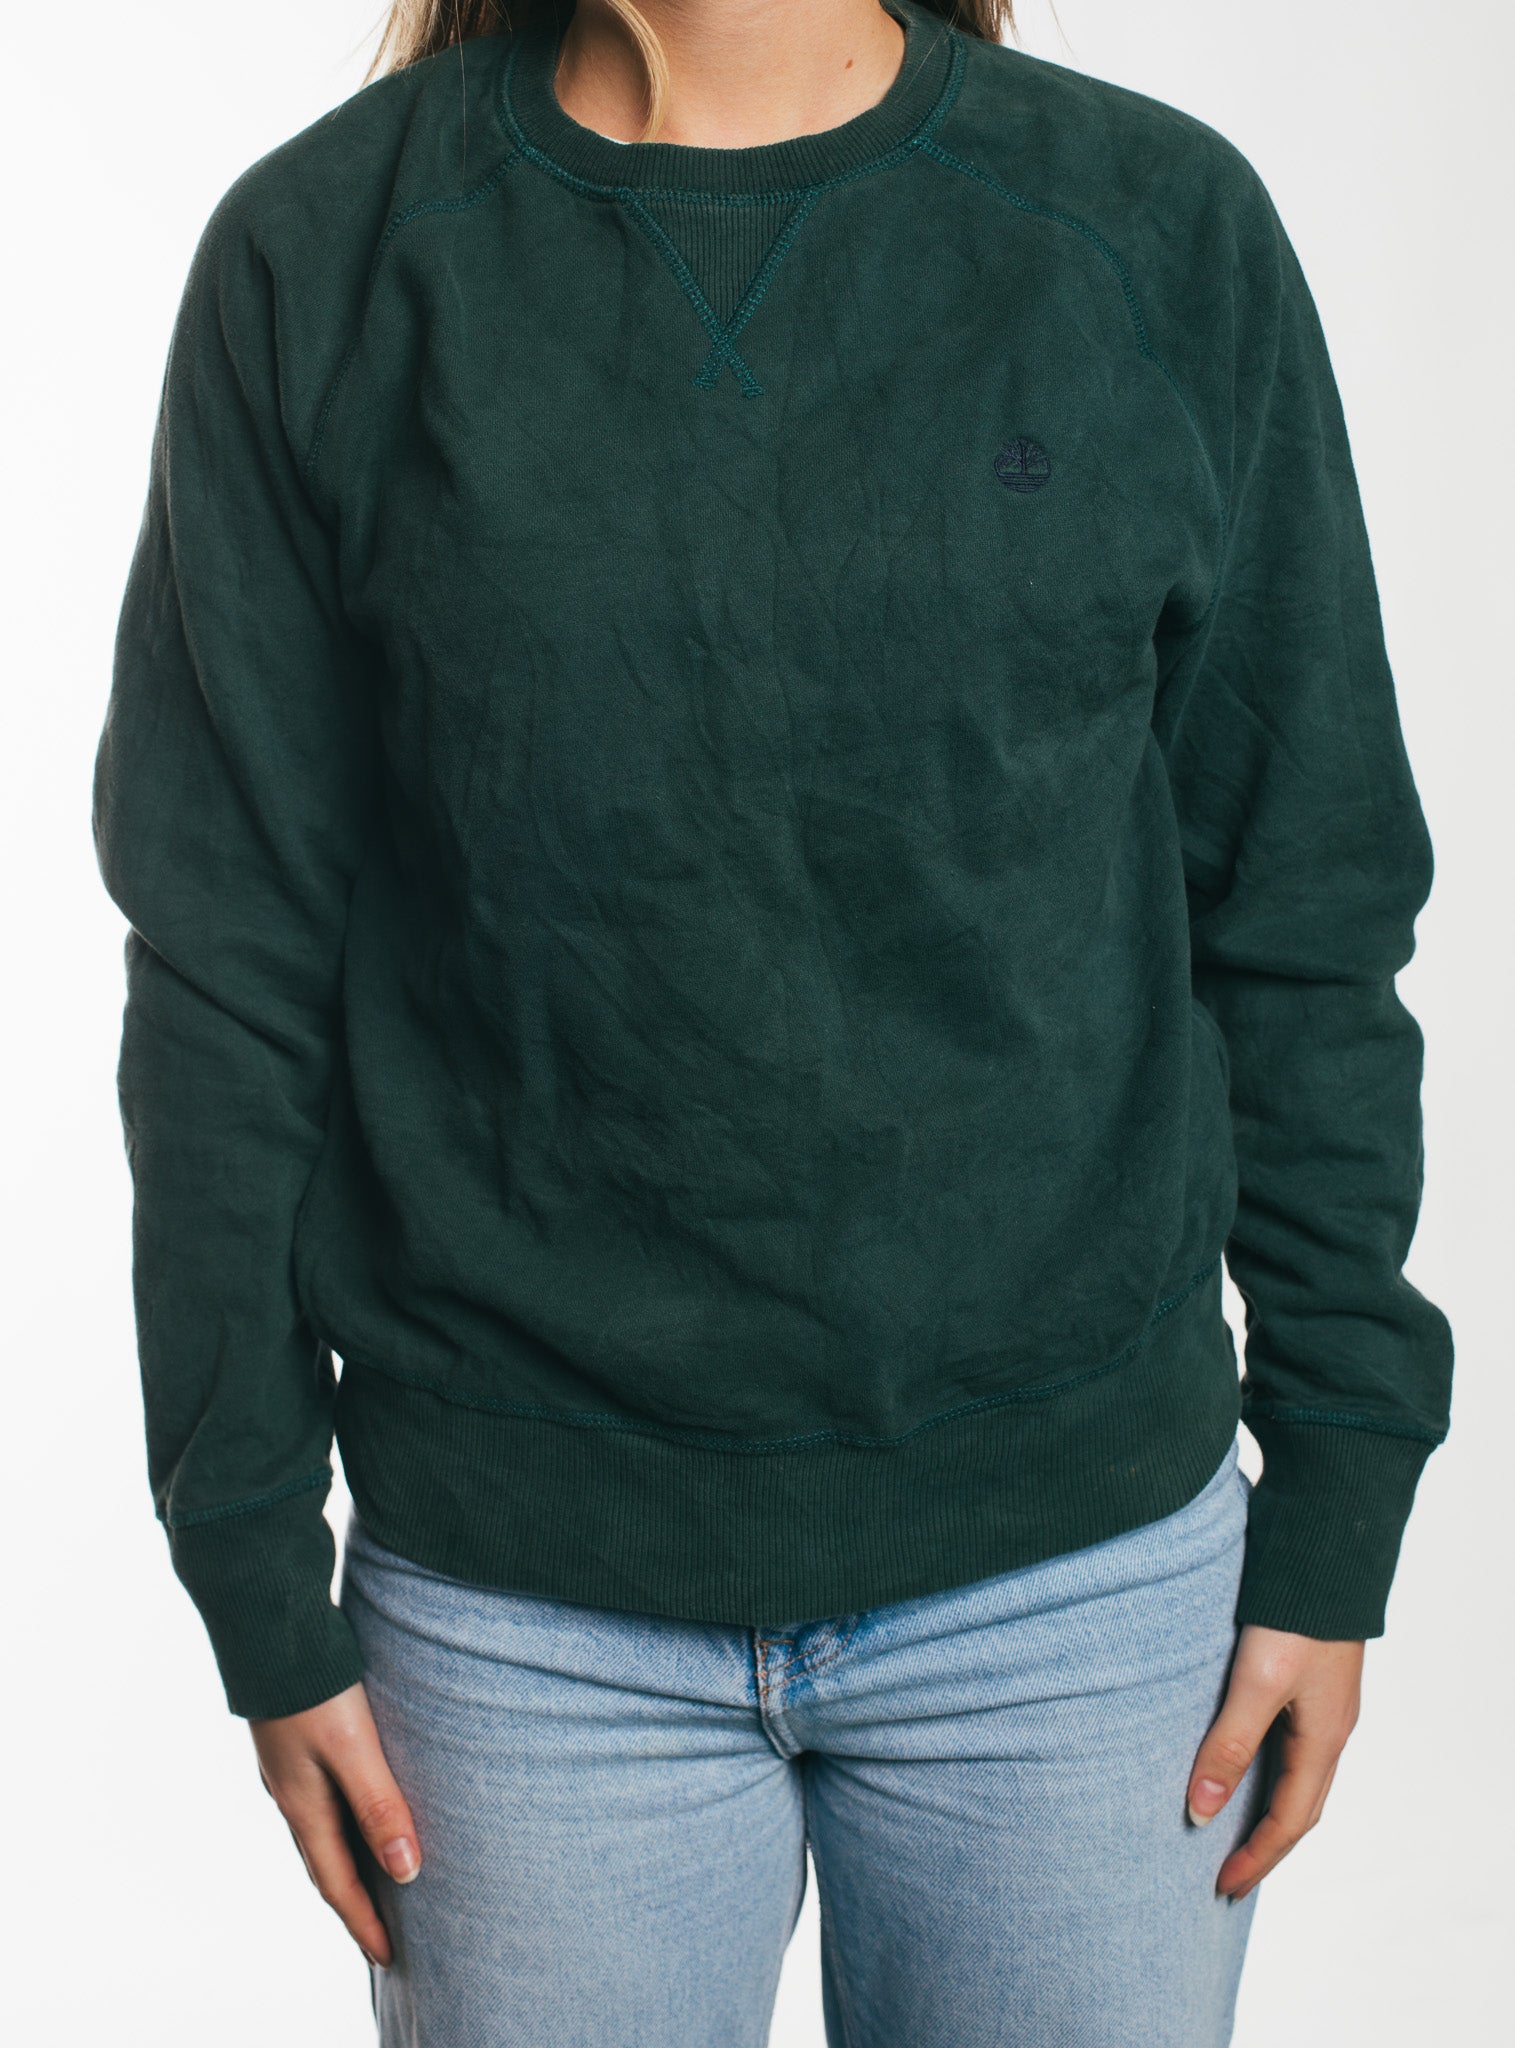 Timberland - Sweatshirt (S)